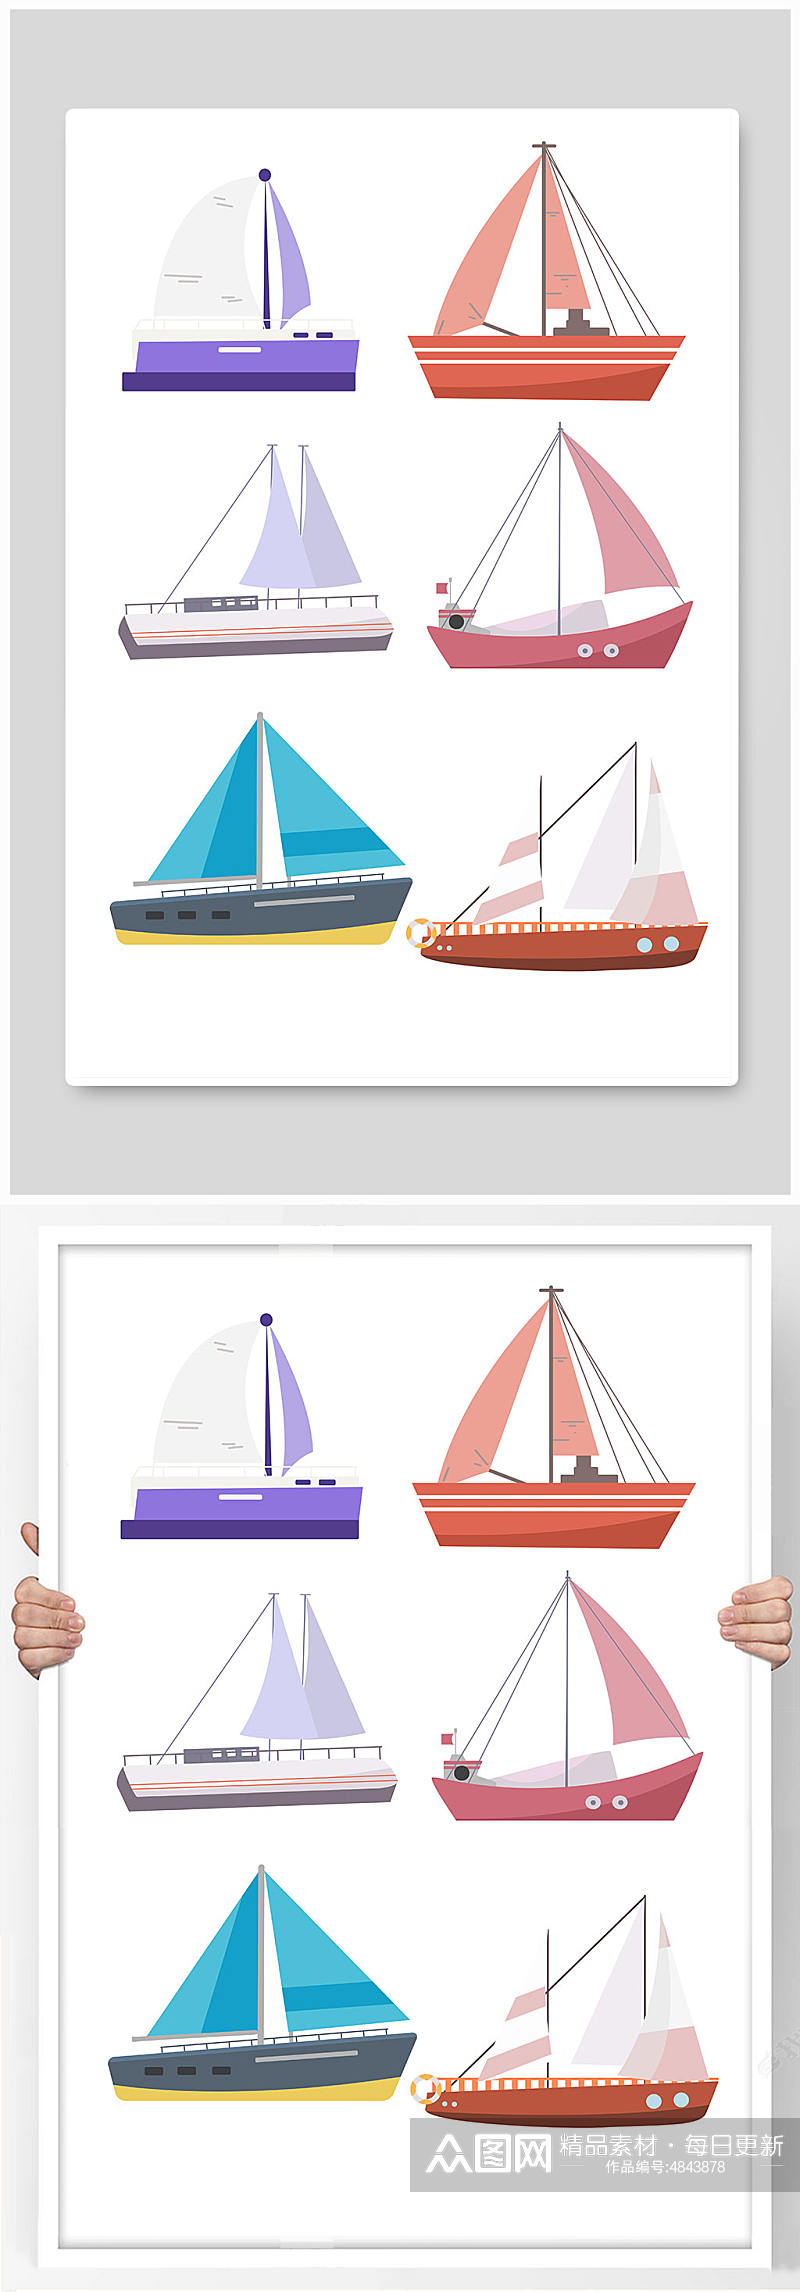 清新帆船交通工具元素插画素材